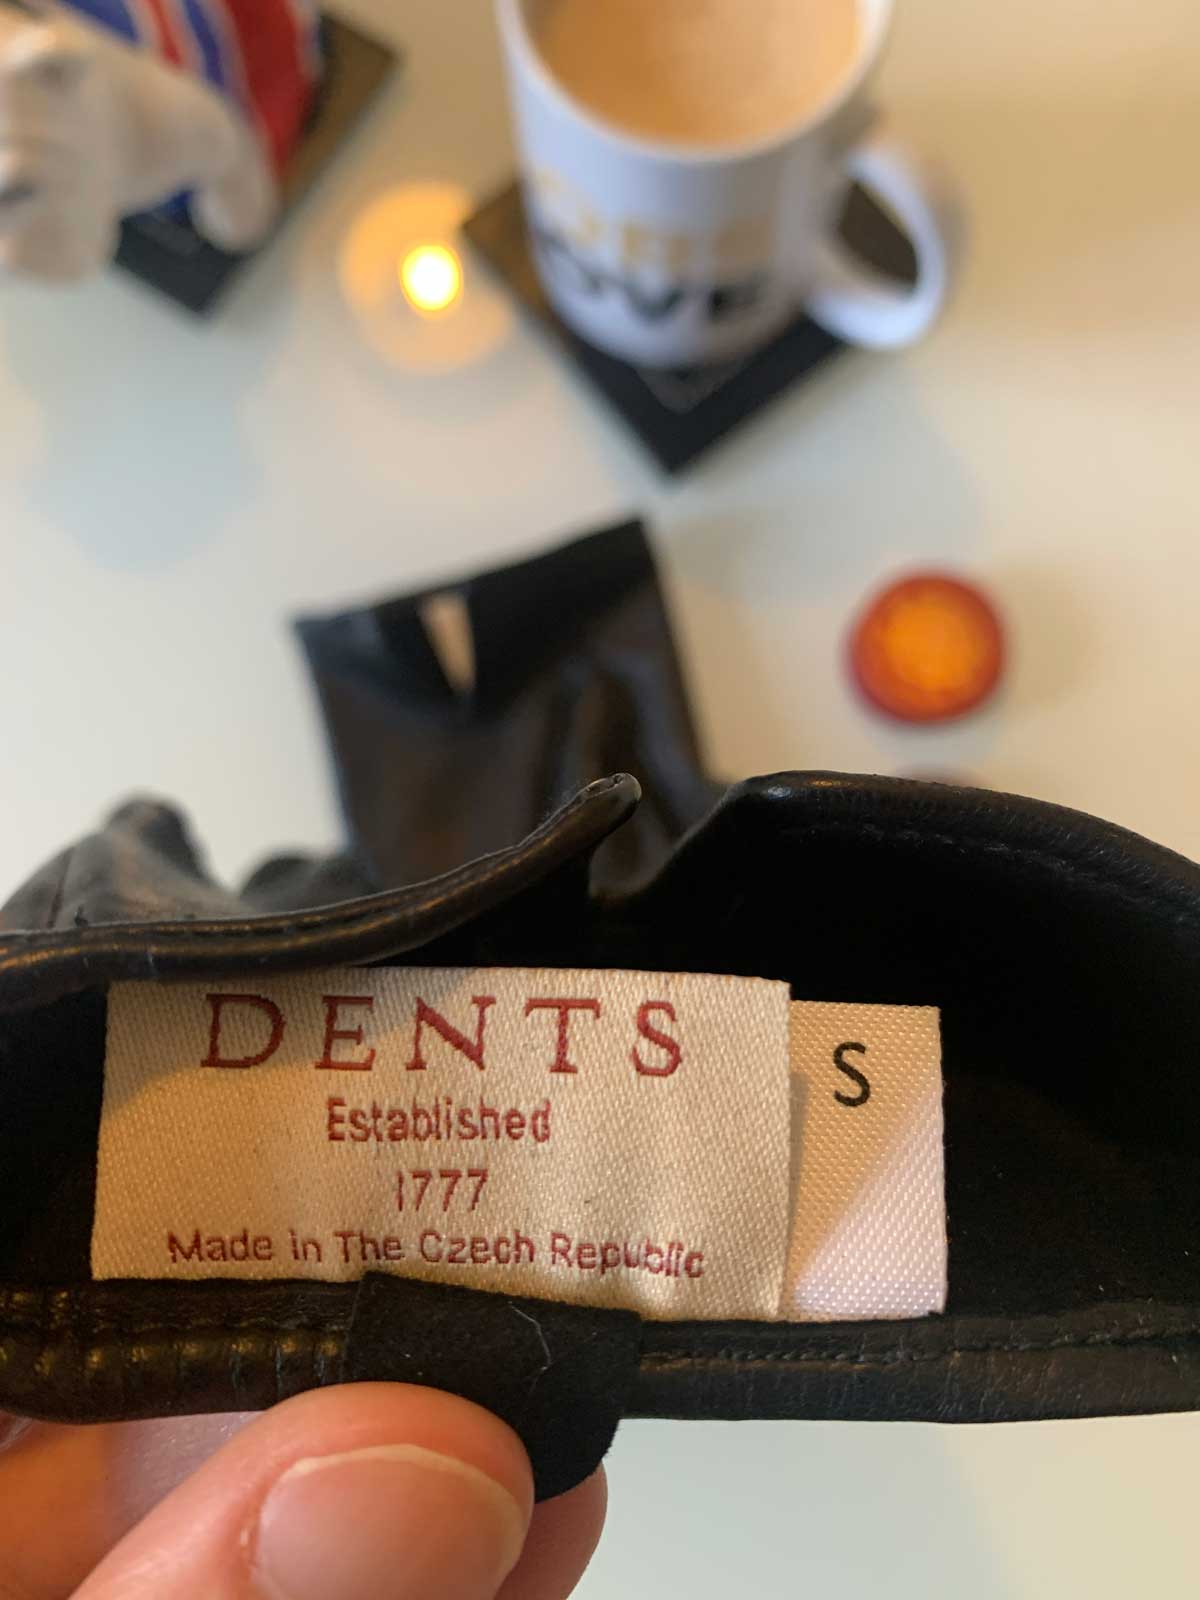 Dents label inside